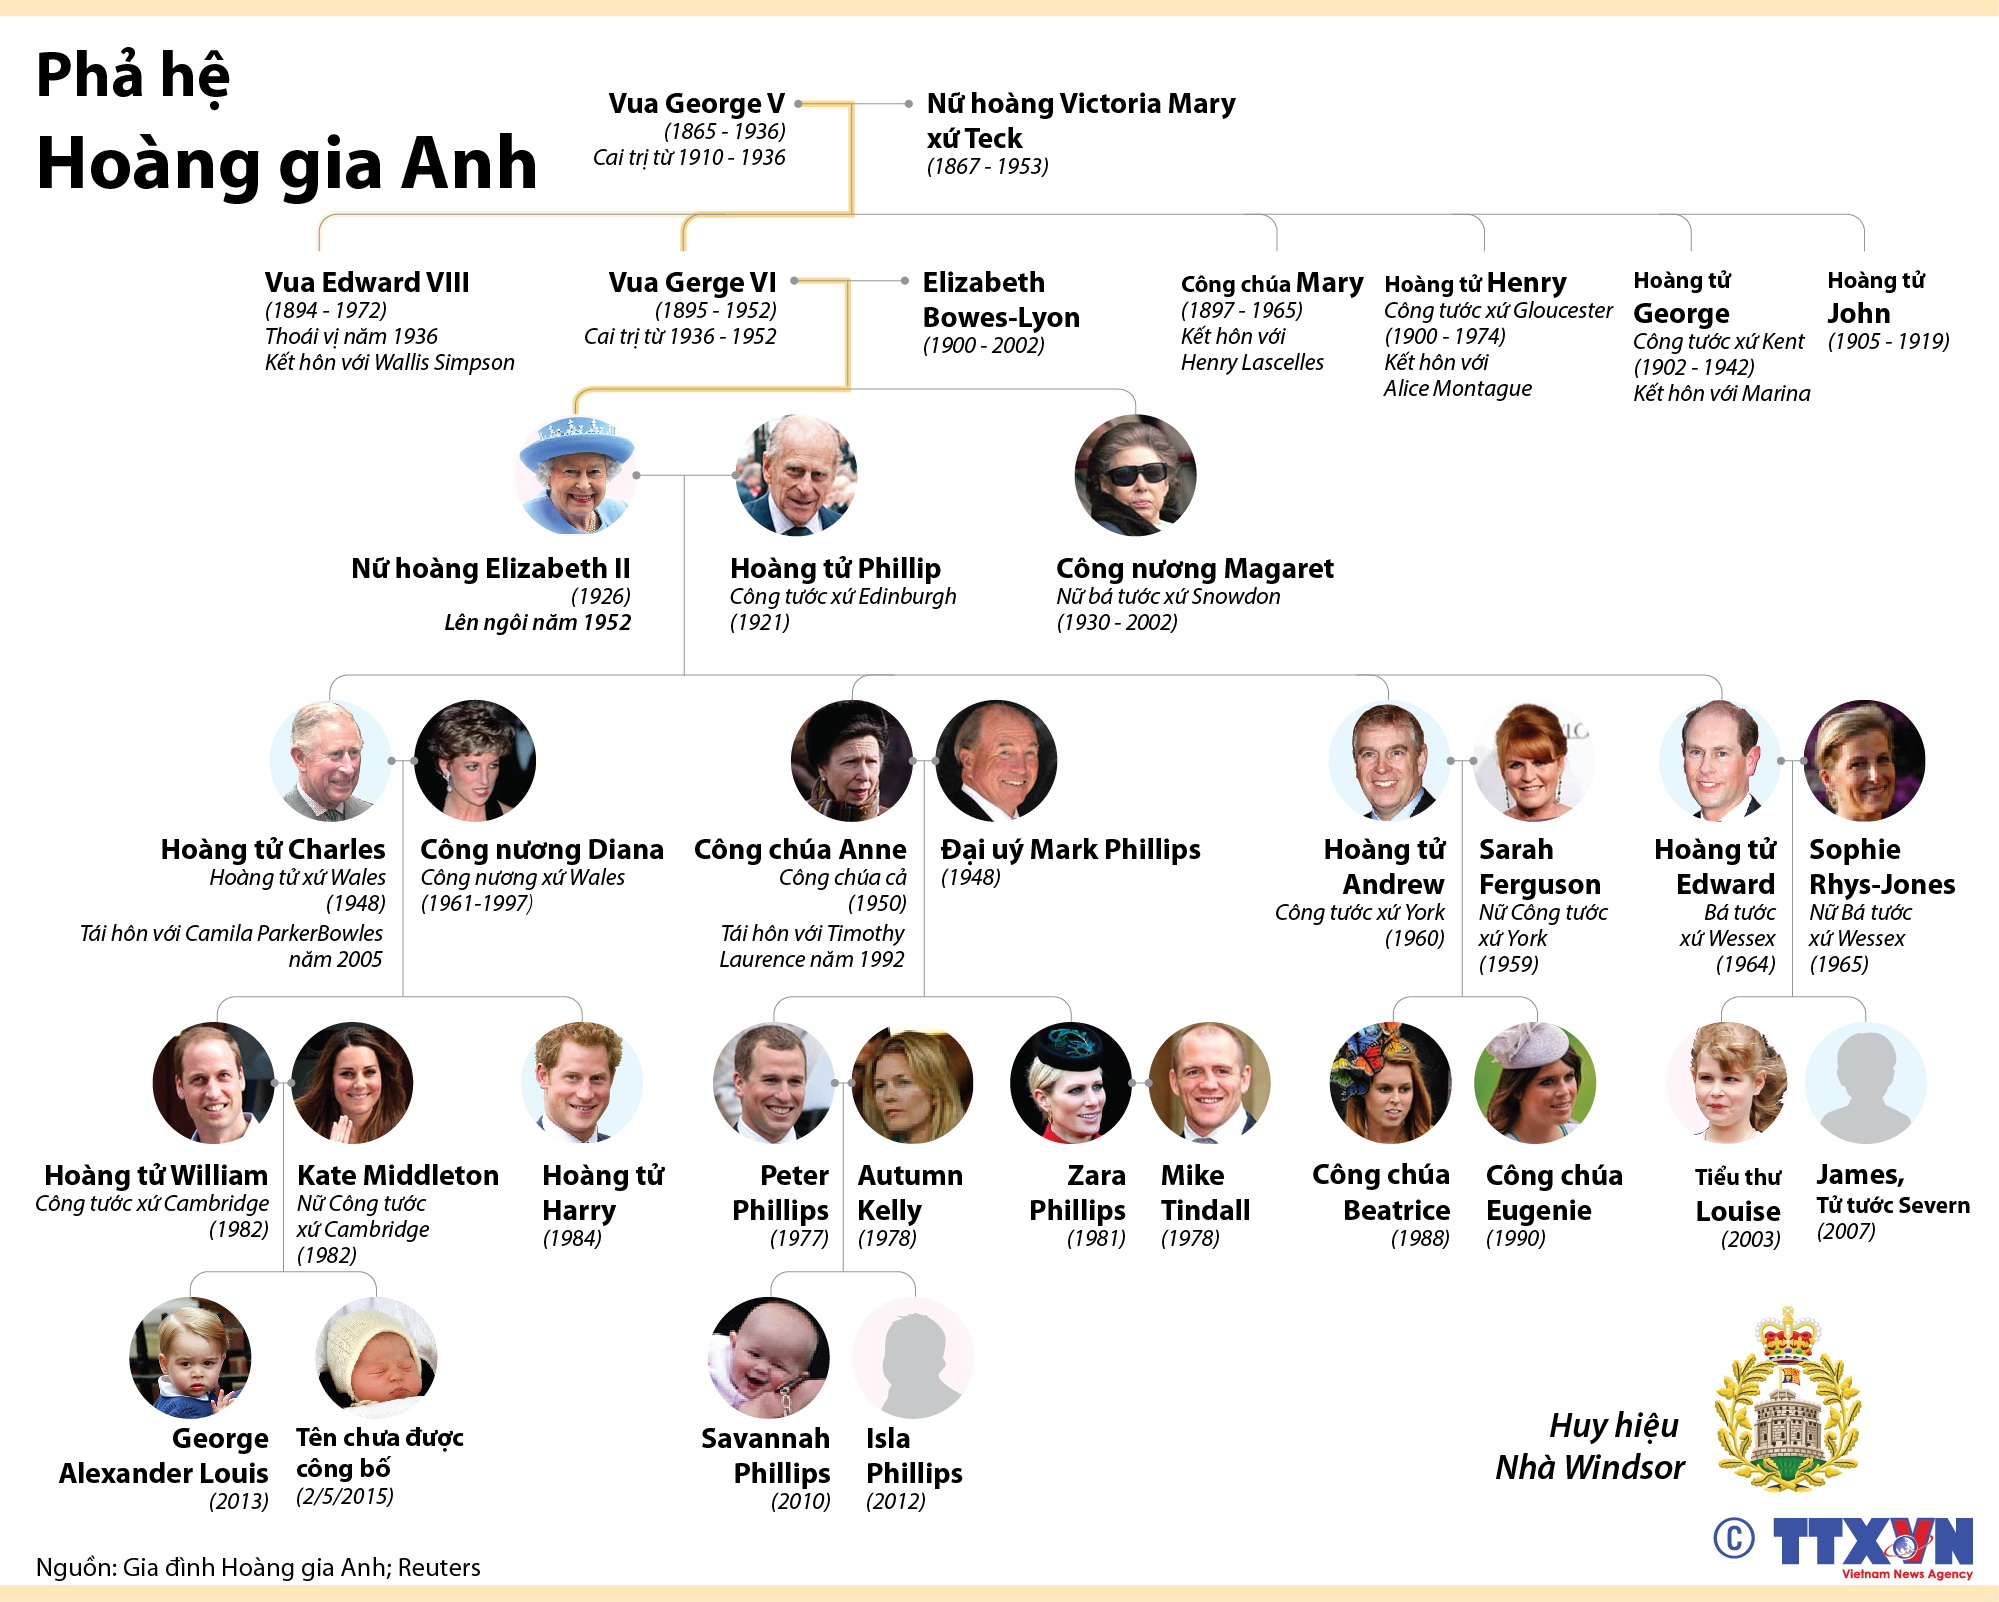 Phả hệ gia tộc Hoàng gia Anh là một trong những chủ đề cực kỳ hấp dẫn và tò mò. Hãy khám phá chi tiết về phả hệ này để tìm hiểu thông tin về các thành viên trong gia đình Hoàng gia Anh từ trước đến nay.